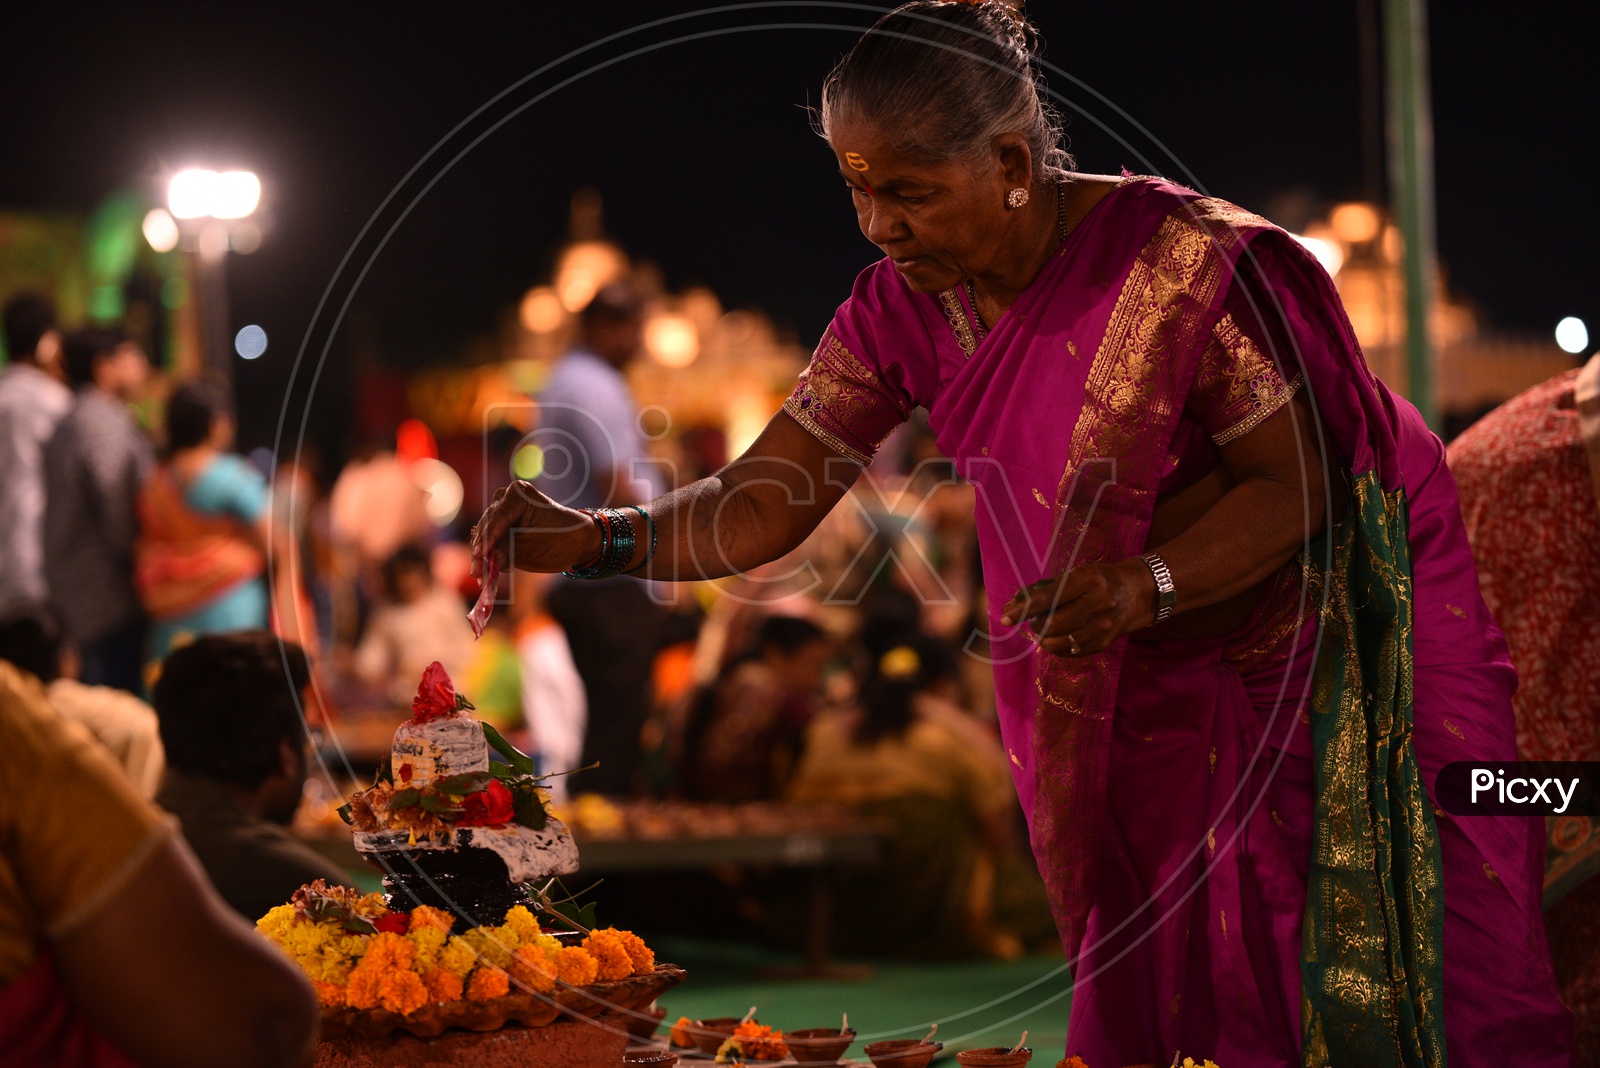 A woman decorates Hindu god, Shiva Linga Idol